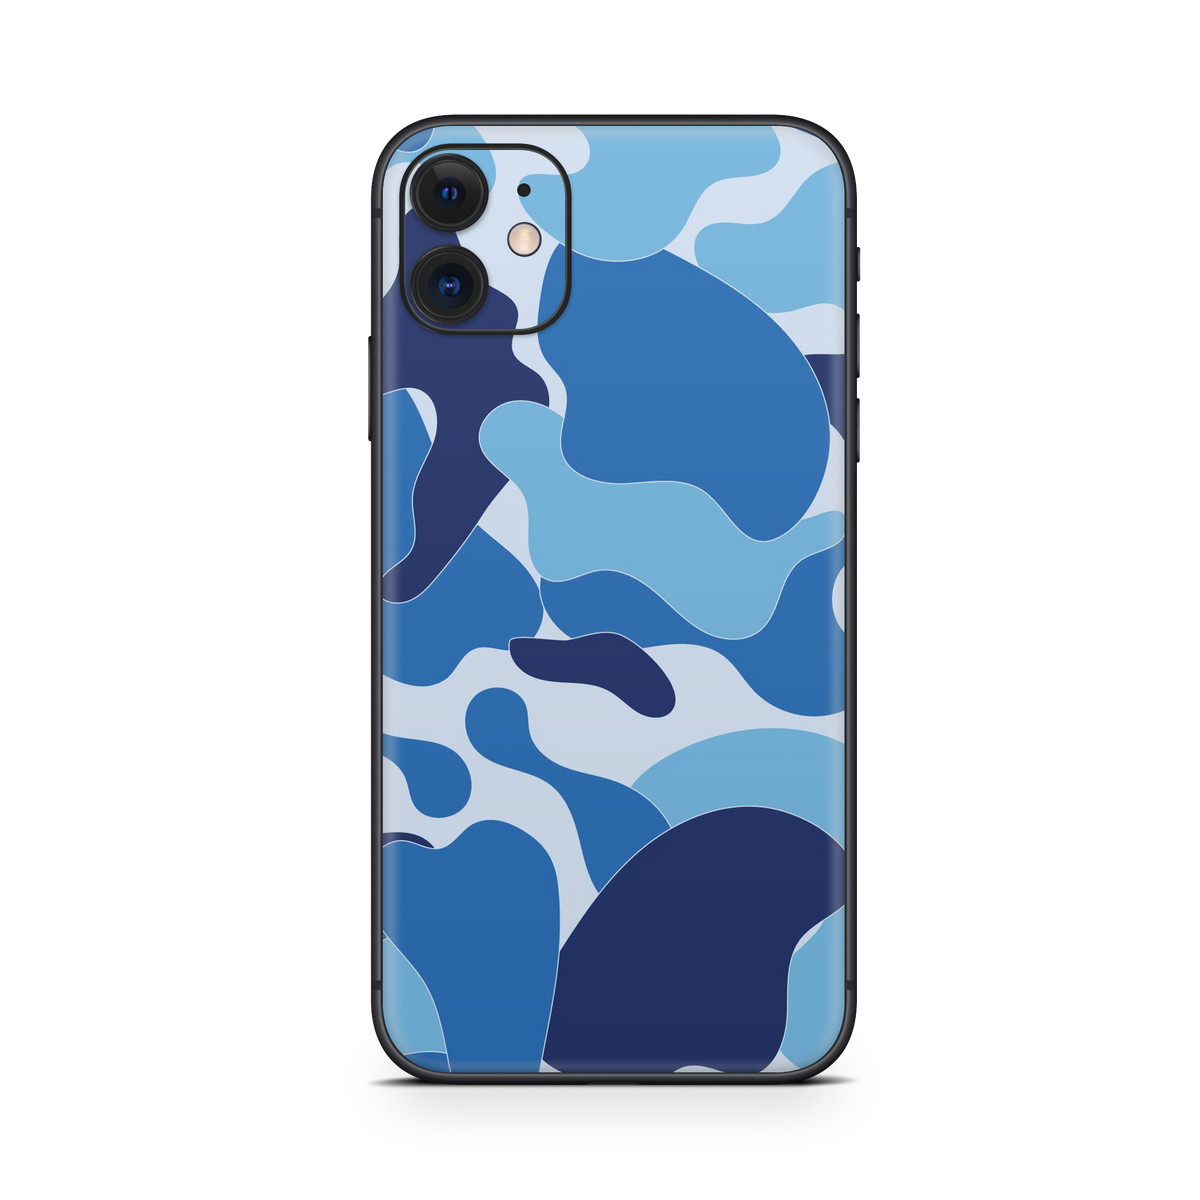 Apple iPhone Ape Camo Blue Skin